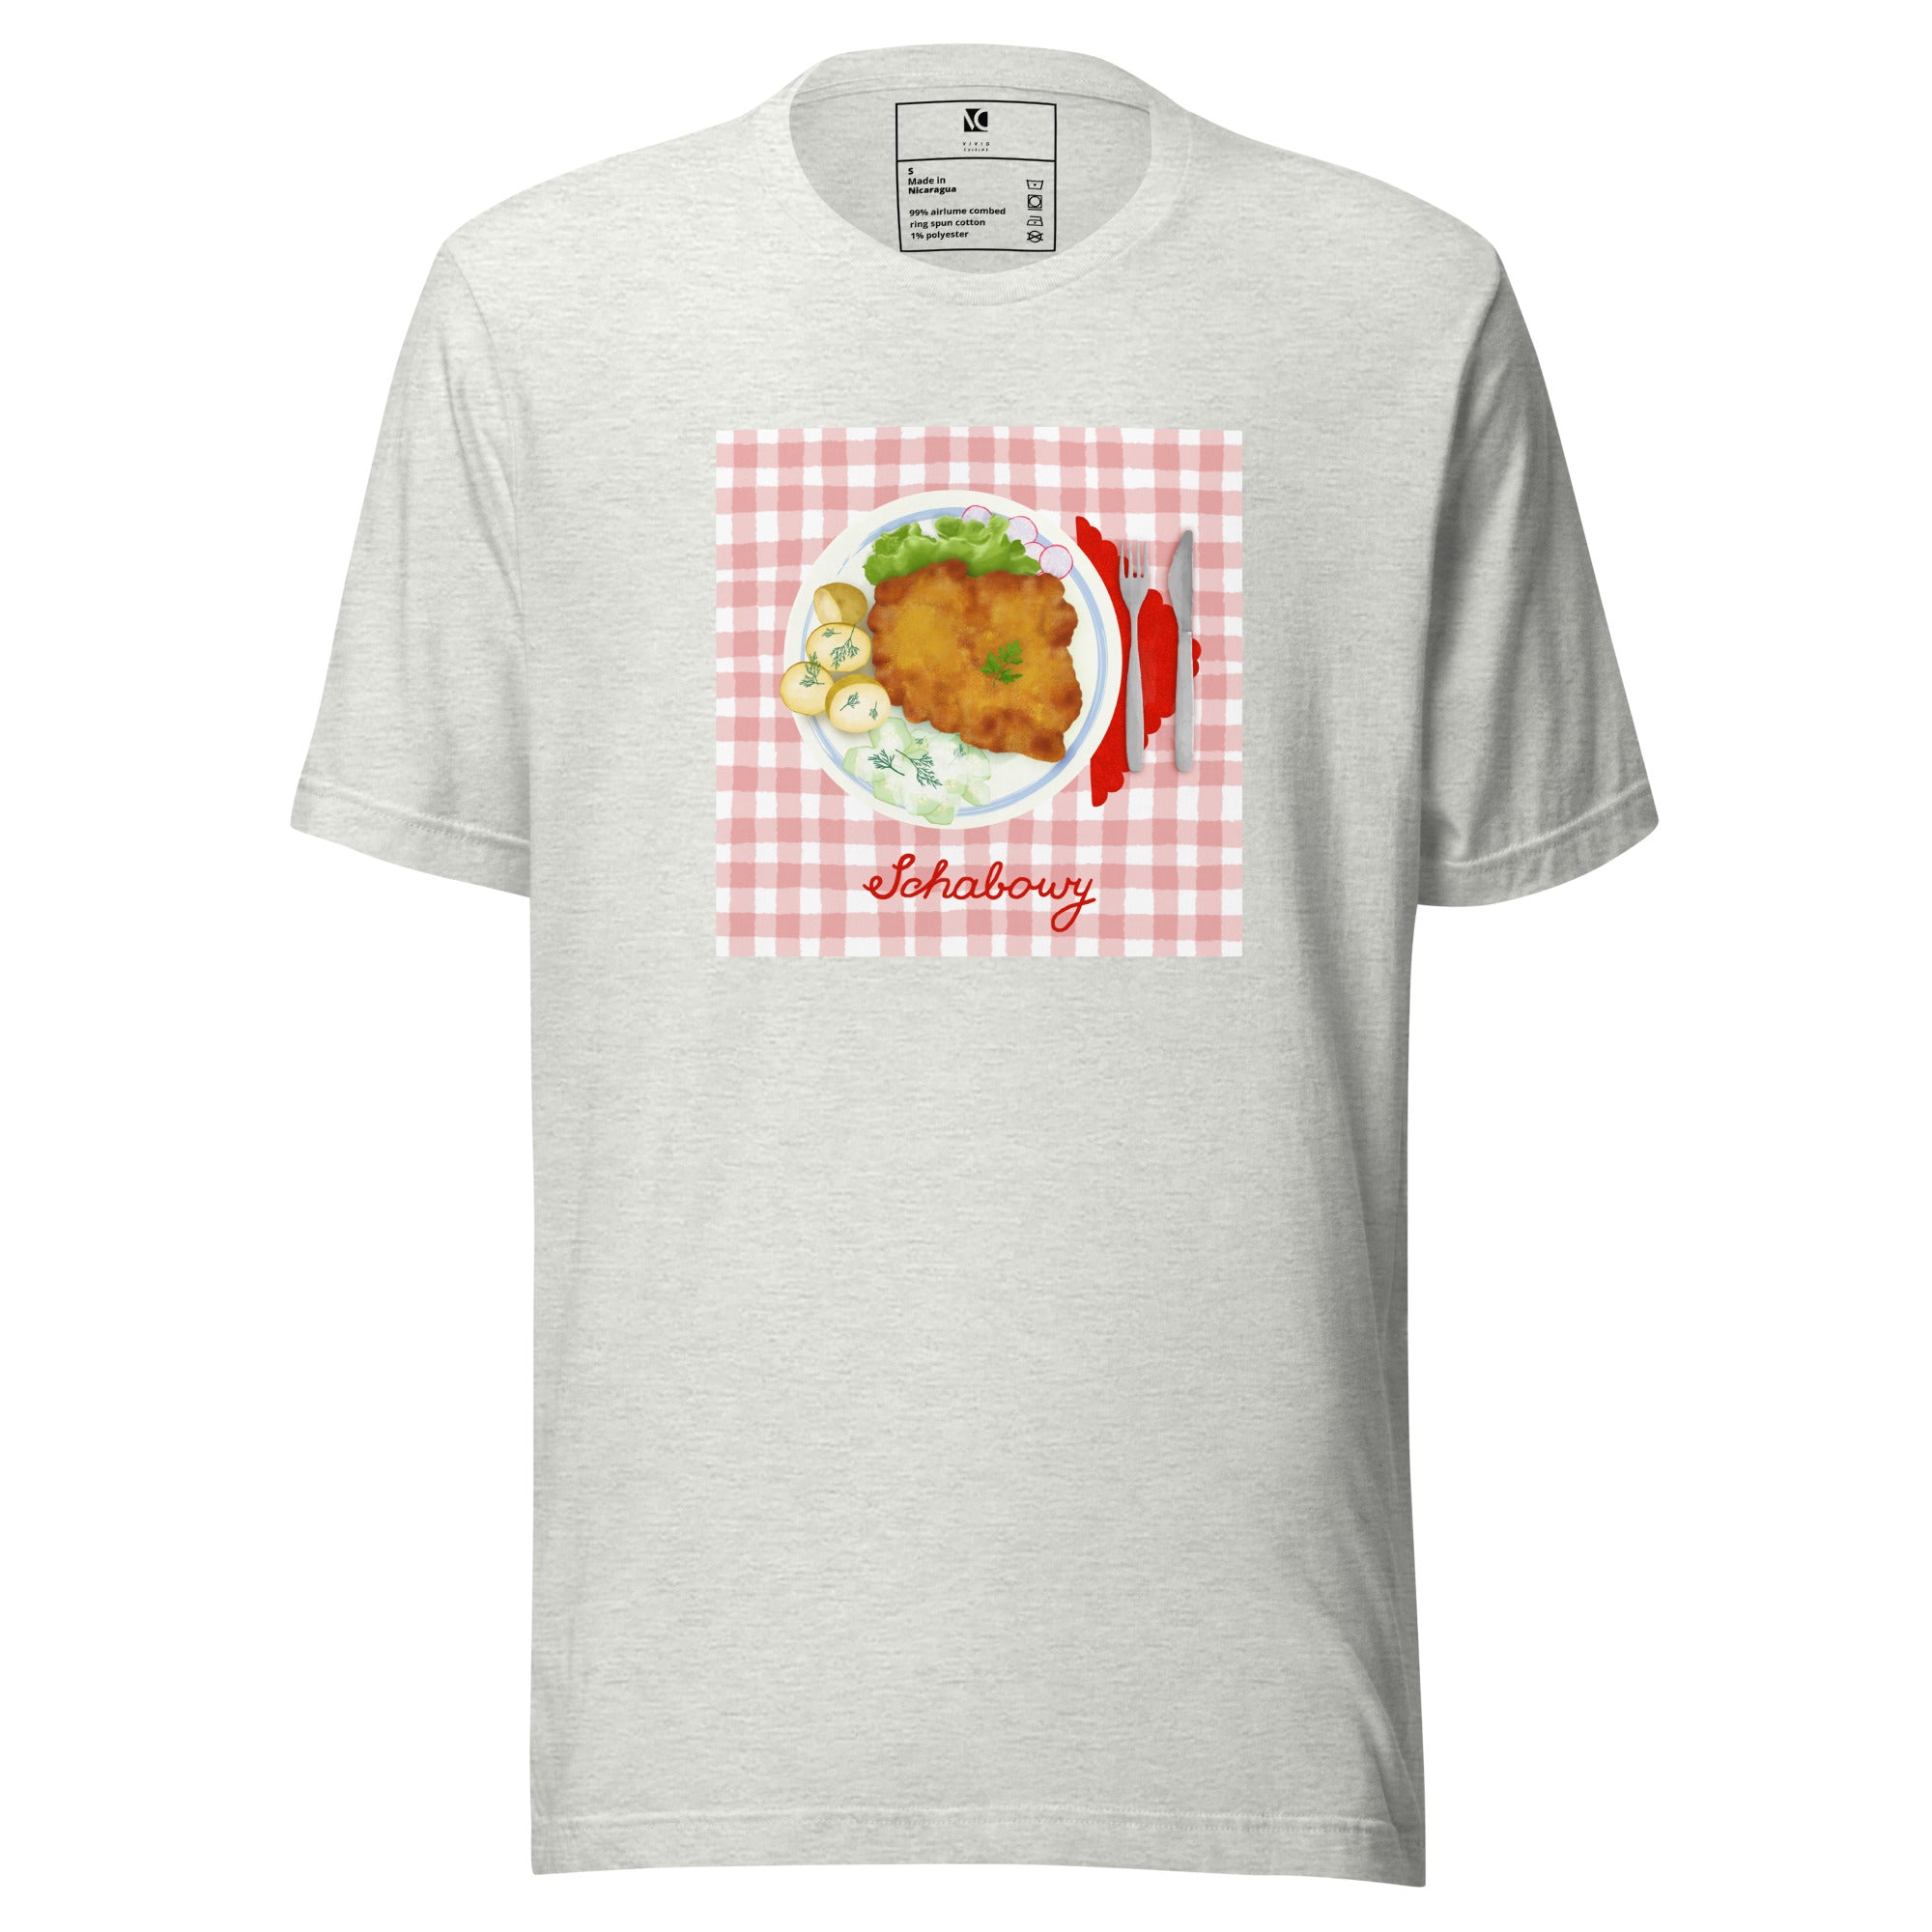 Sunday Schabowy - Unisex T-Shirt